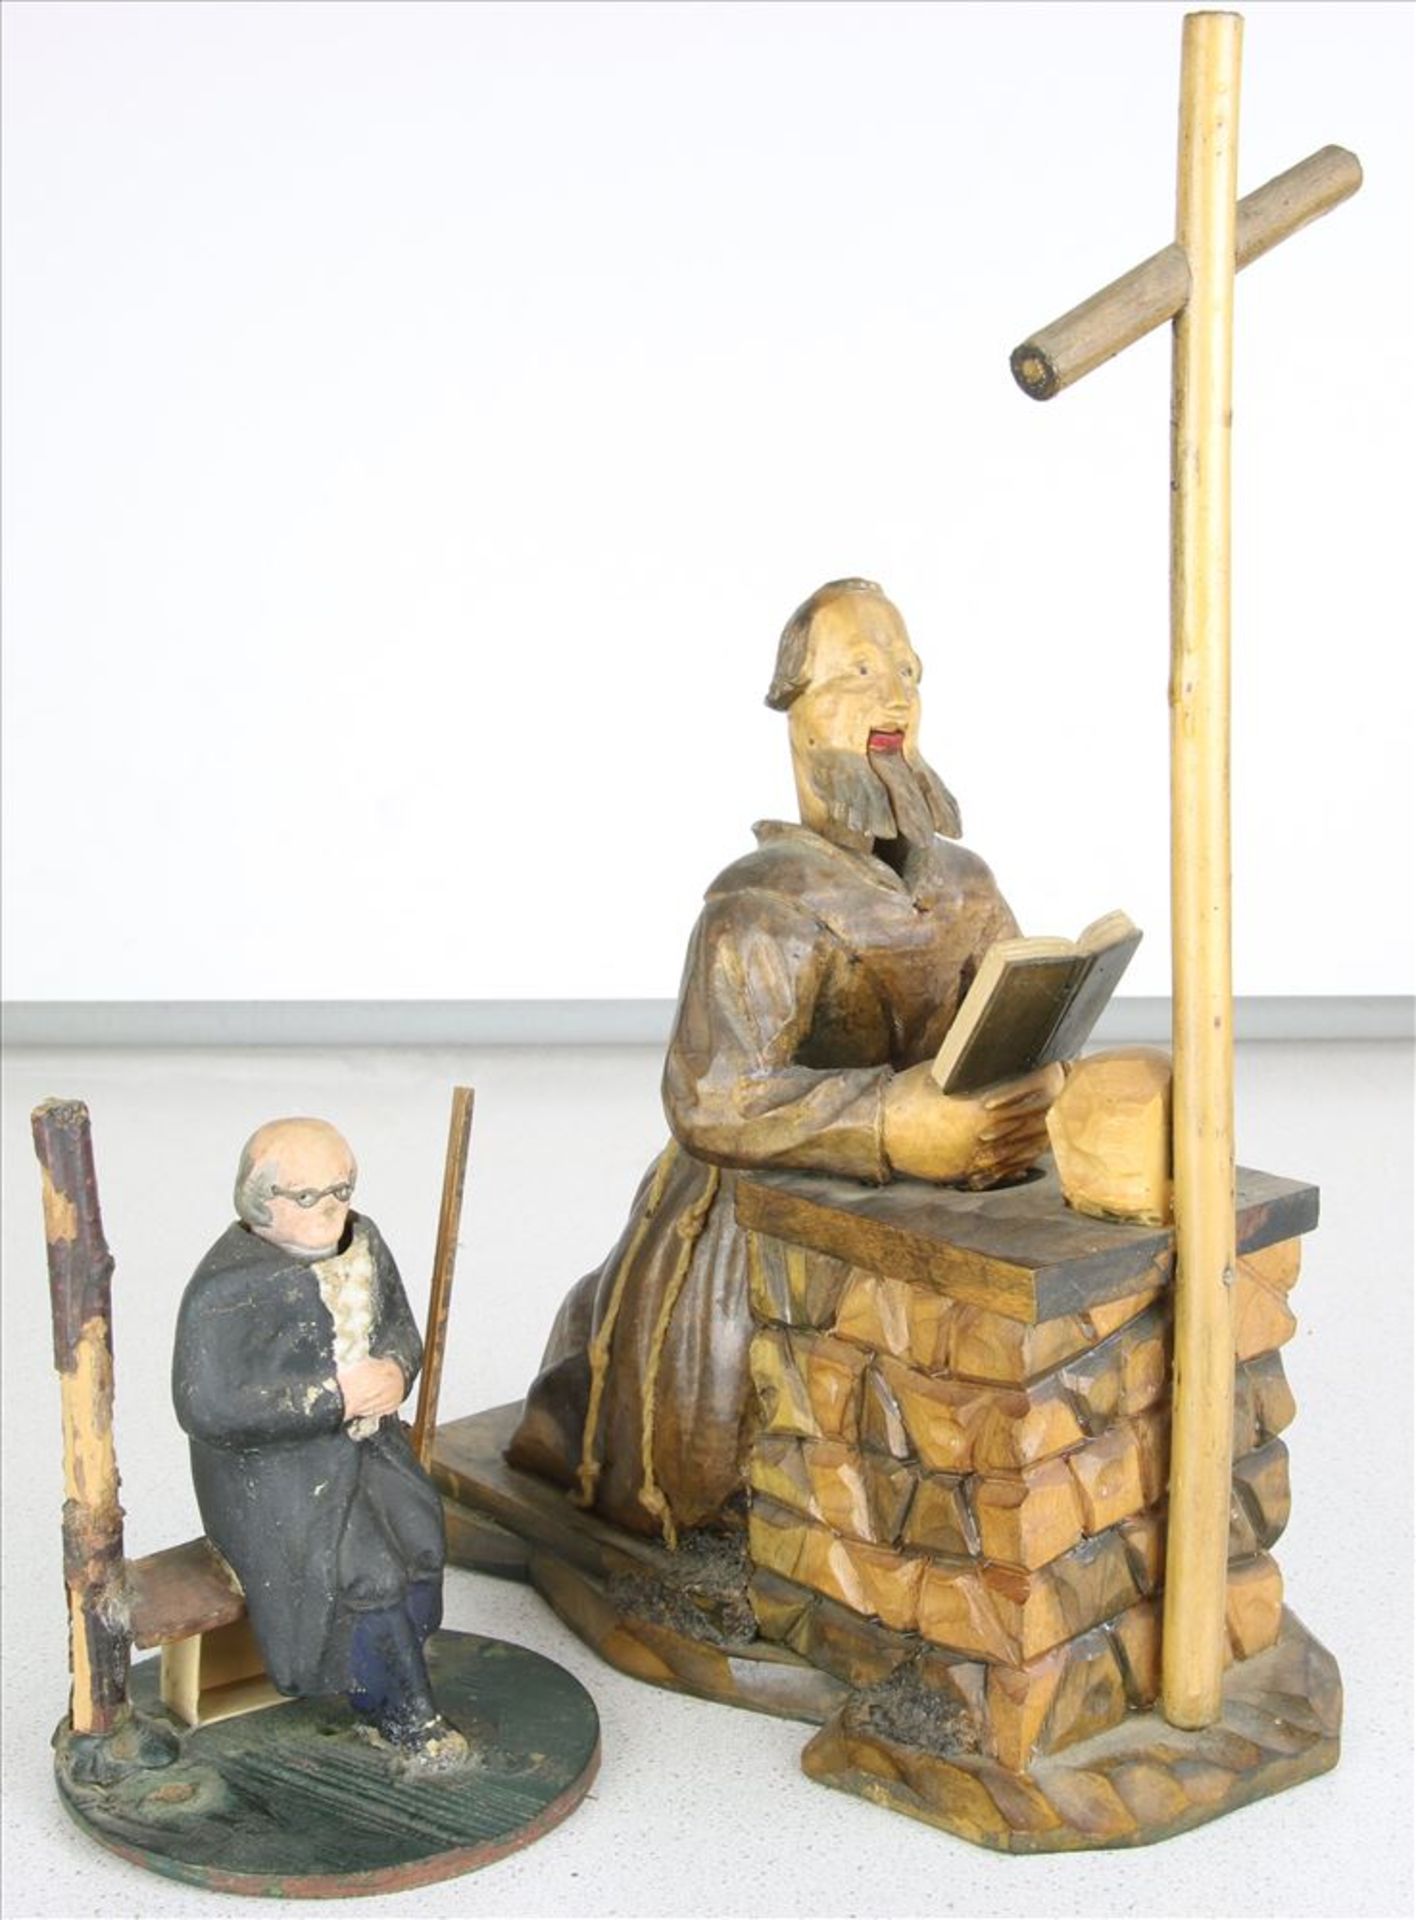 Zwei Nickfiguren Deutsch 19. Jahrhundert. Betender Heiliger, knieend vor einem Altar und ein